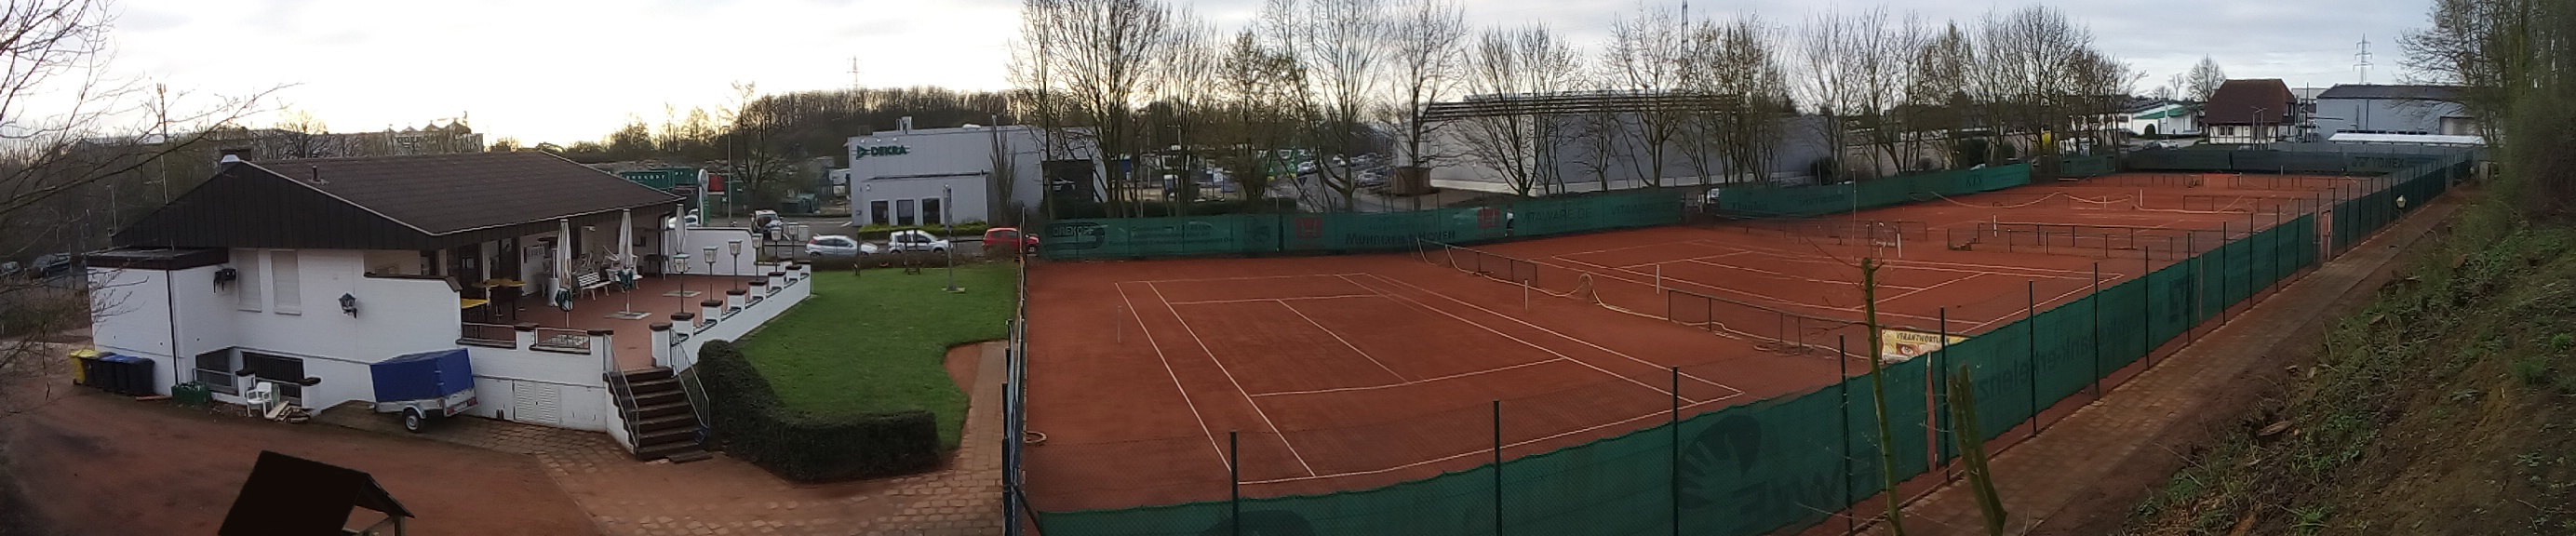 Tennisclub PSV Erkelenz